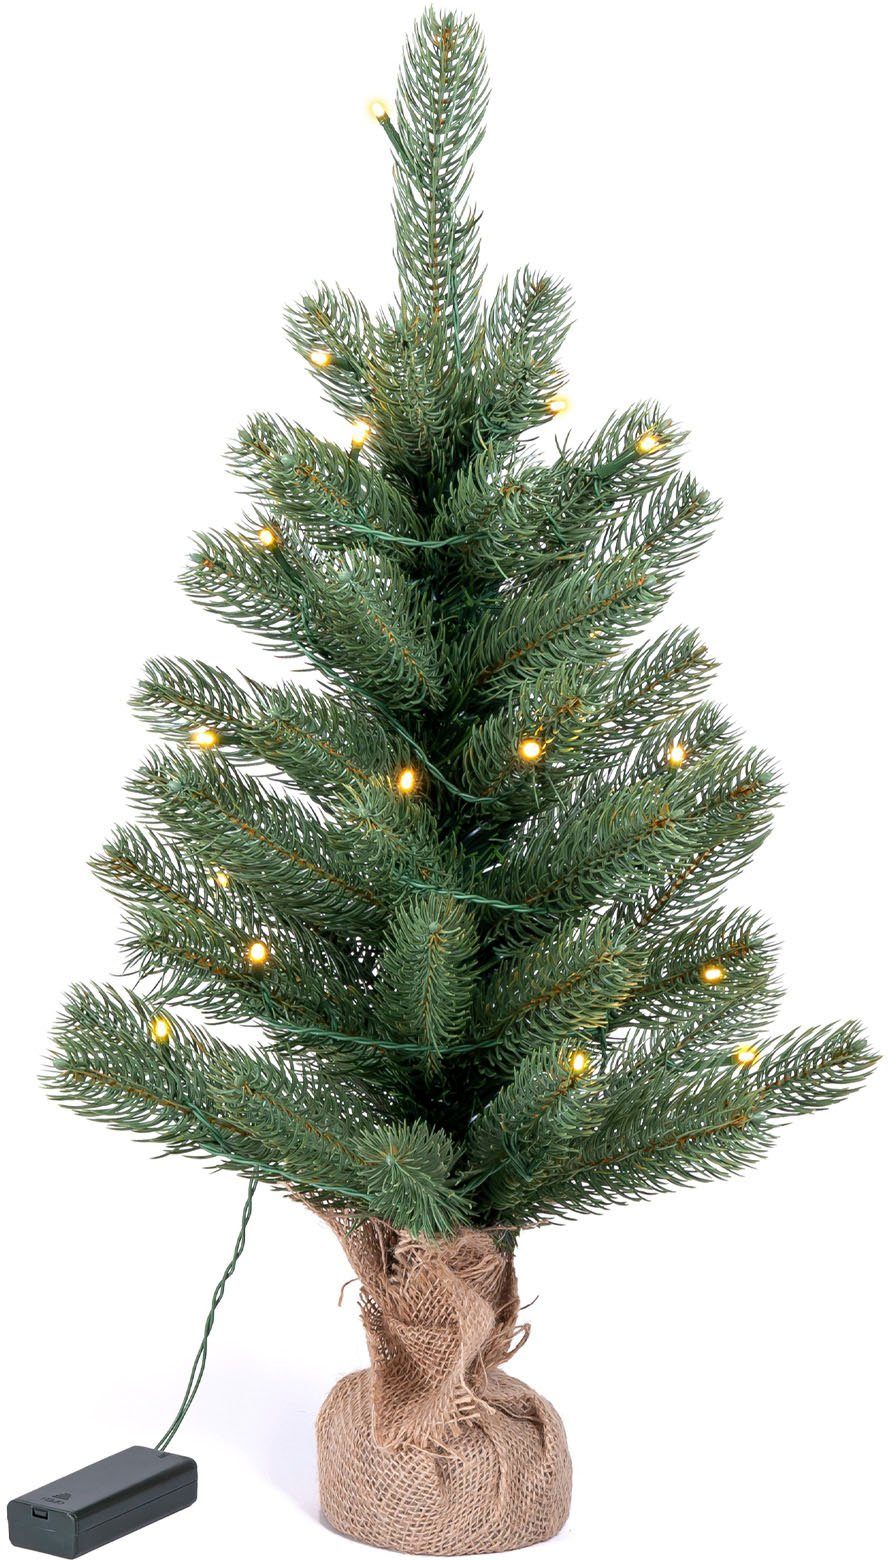 IC Winterworld Künstlicher Weihnachtsbaum LED-Tannenbaum, künstlicher Christbaum, Höhe ca. 60 cm, Nordmanntanne, Weihnachtsdeko mit Jutebeutel um den Betonfuß, Batteriebetrieb | Künstliche Weihnachtsbäume